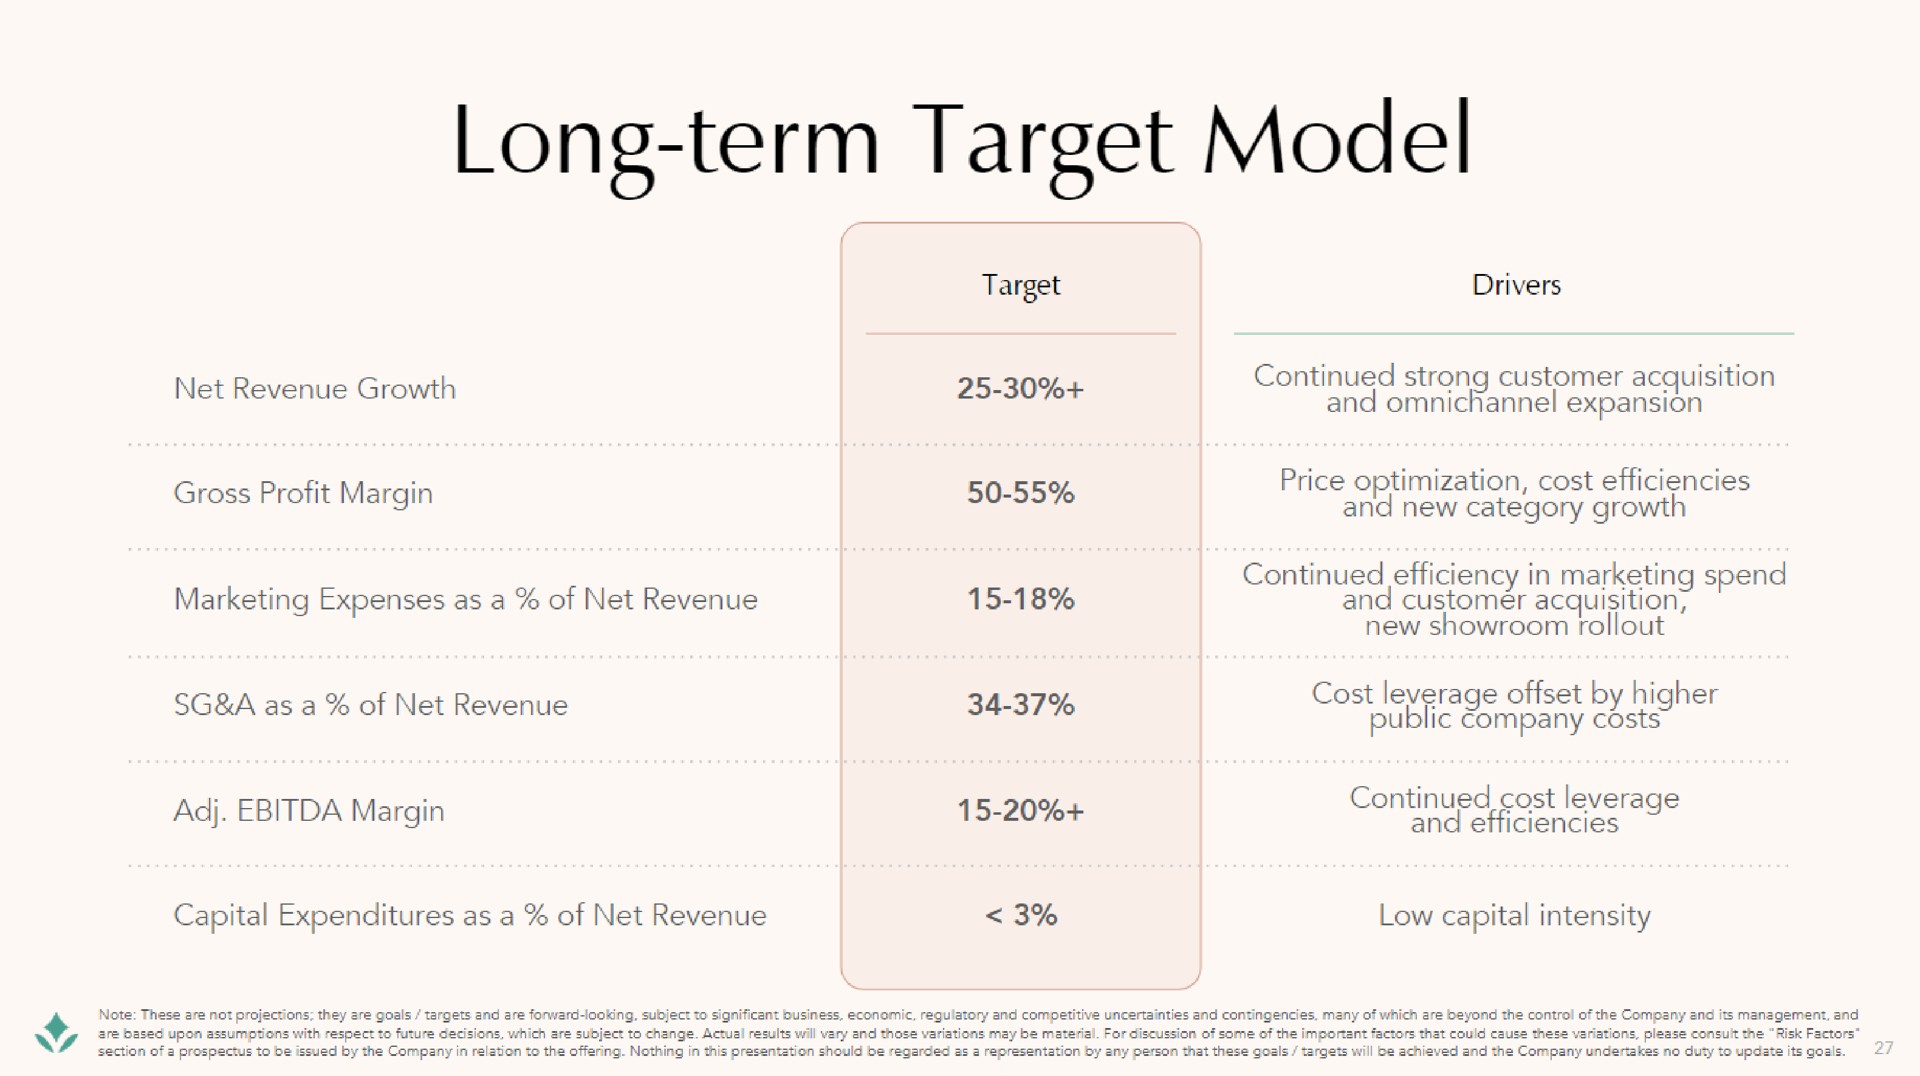 long term target model public company costs | Brilliant Earth